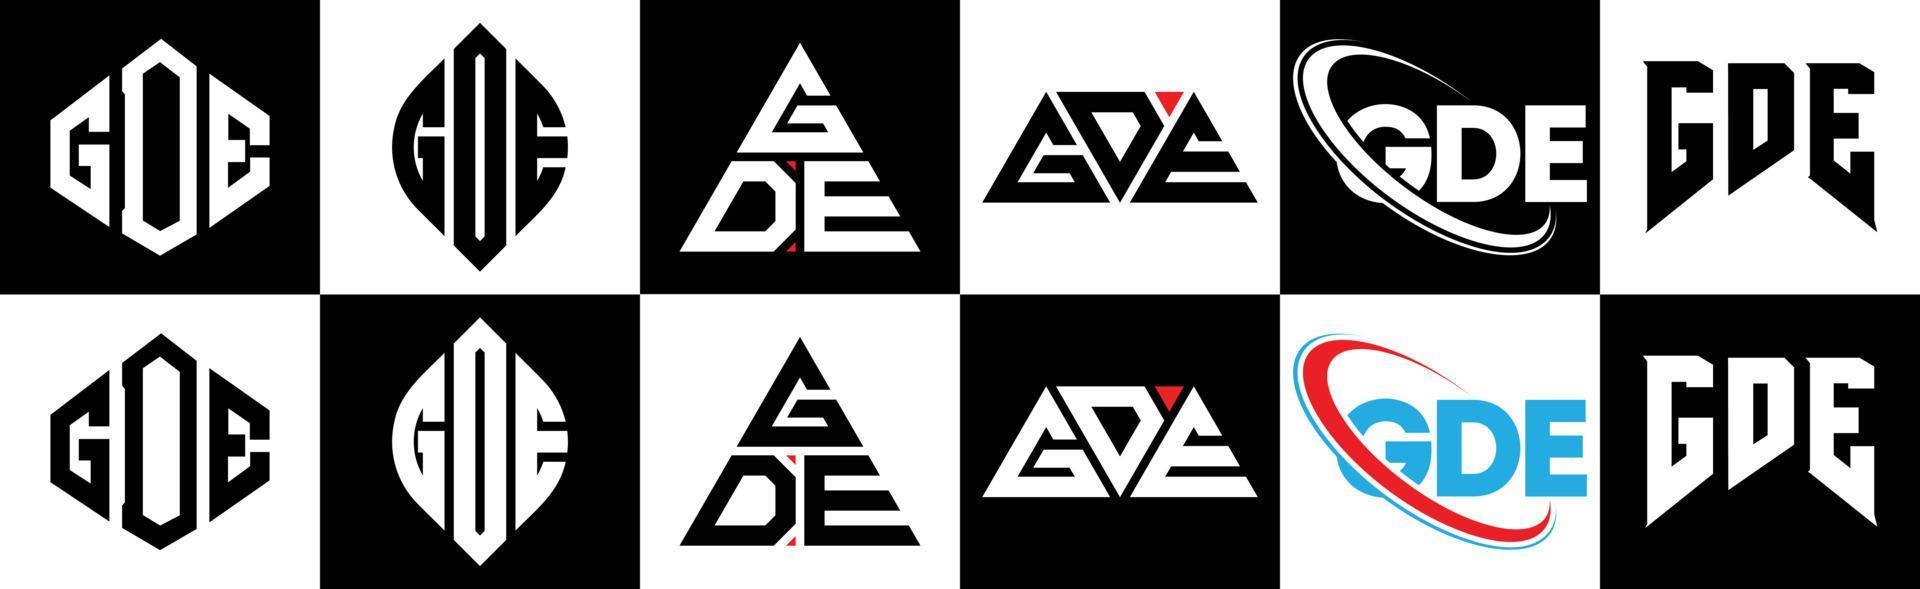 gde-Buchstaben-Logo-Design in sechs Stilen. GDE-Polygon, Kreis, Dreieck, Sechseck, flacher und einfacher Stil mit schwarz-weißem Buchstabenlogo in einer Zeichenfläche. gde minimalistisches und klassisches Logo vektor